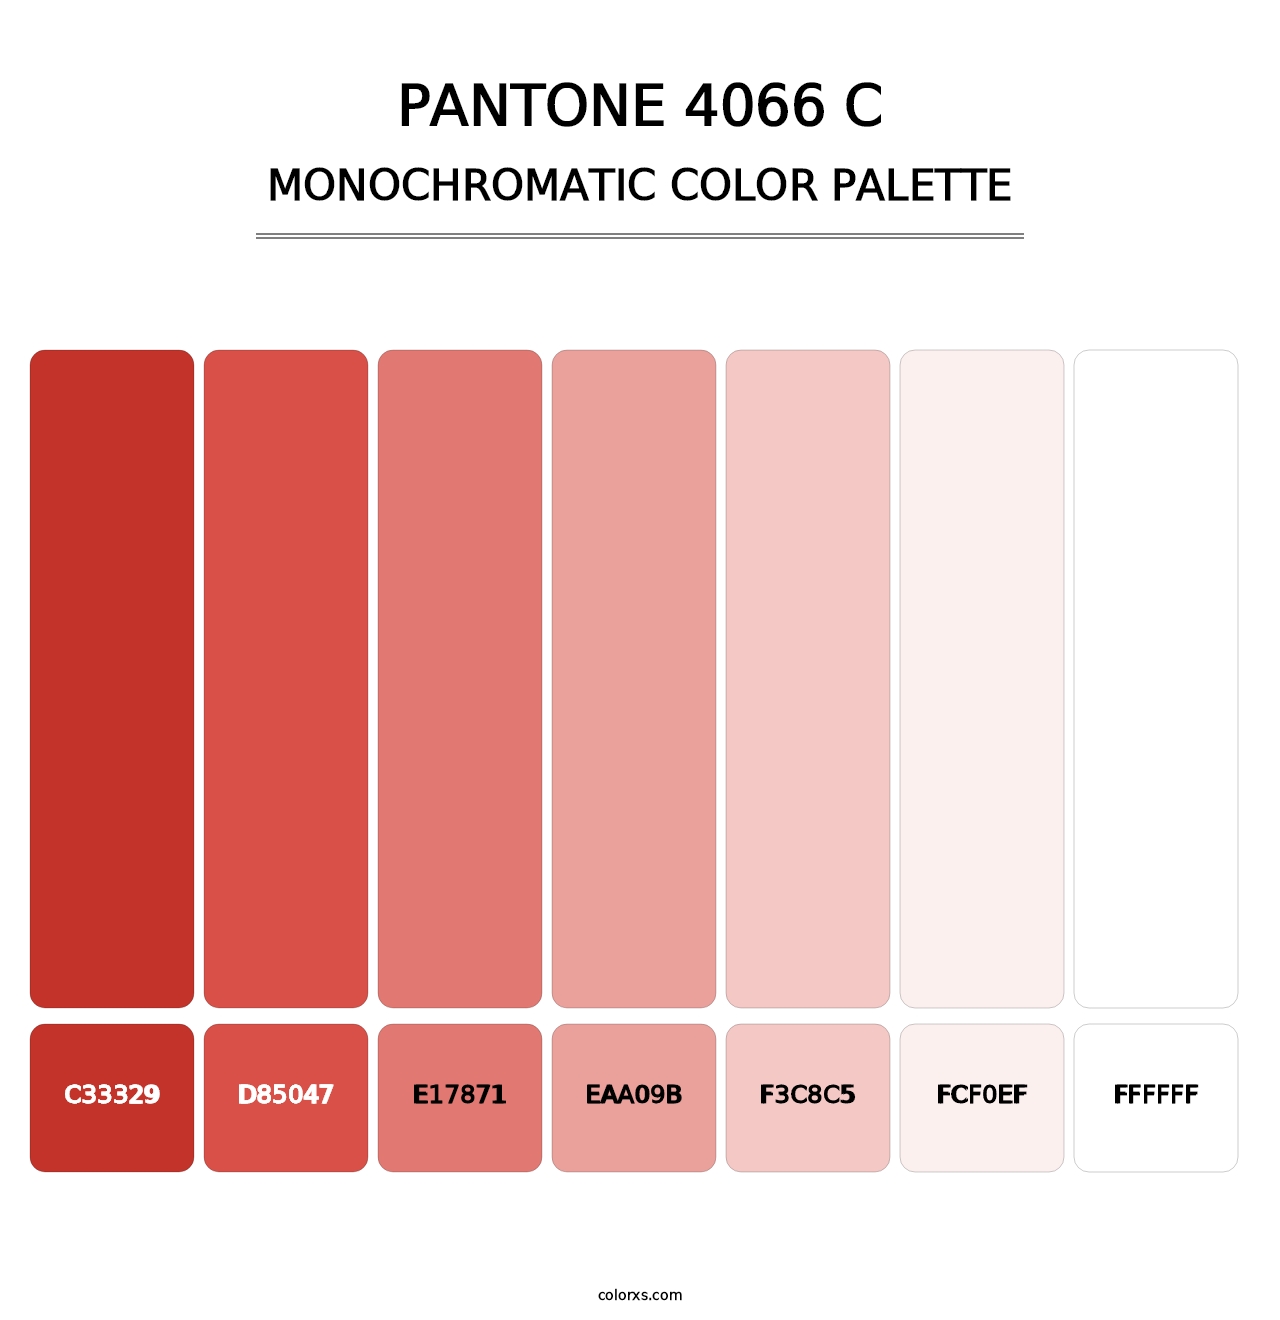 PANTONE 4066 C - Monochromatic Color Palette